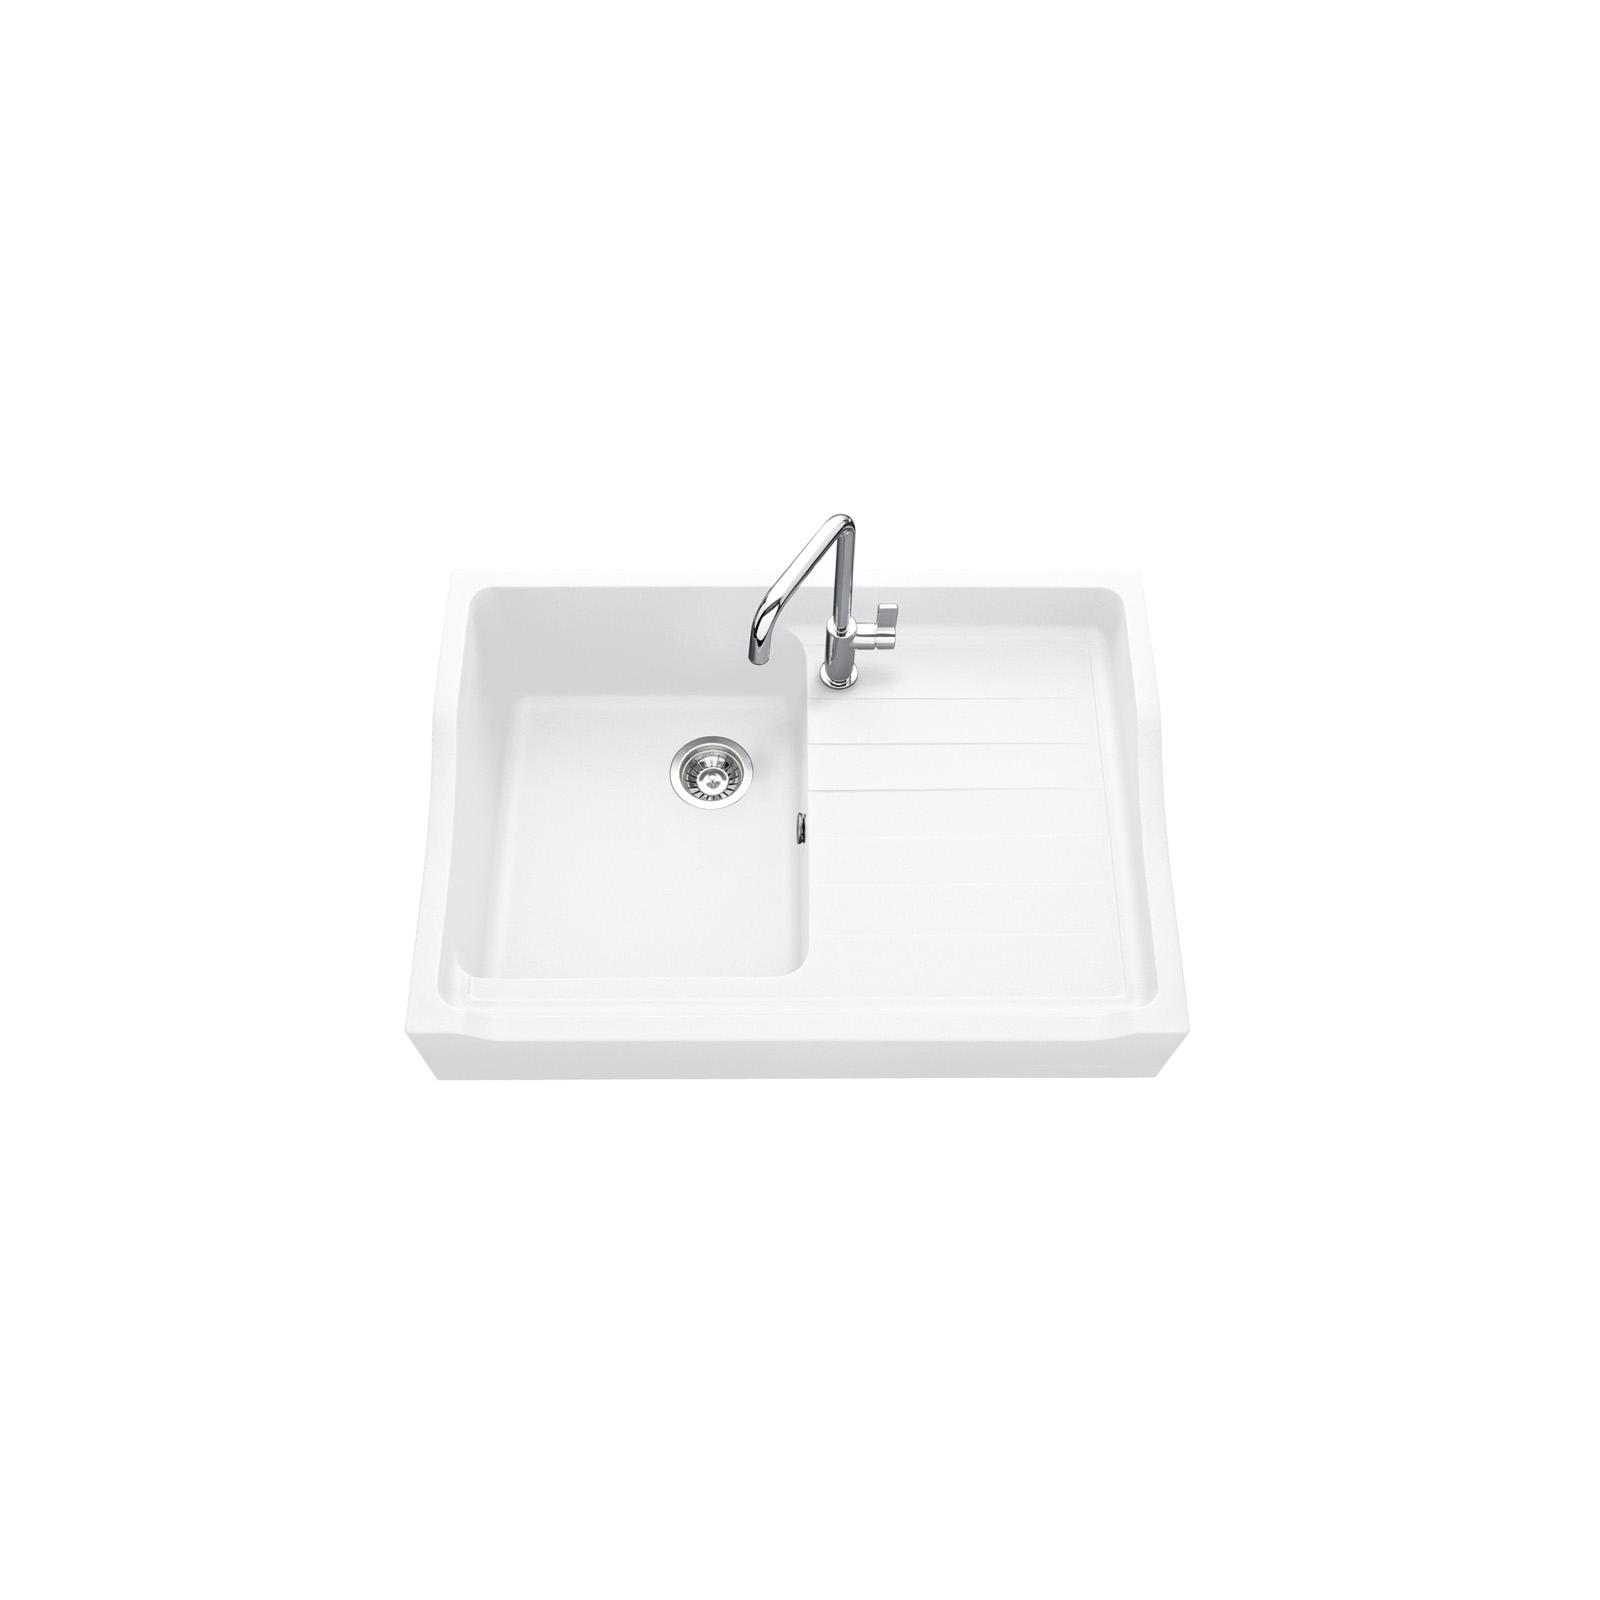 High-quality sink François 1er granit white - one bowl